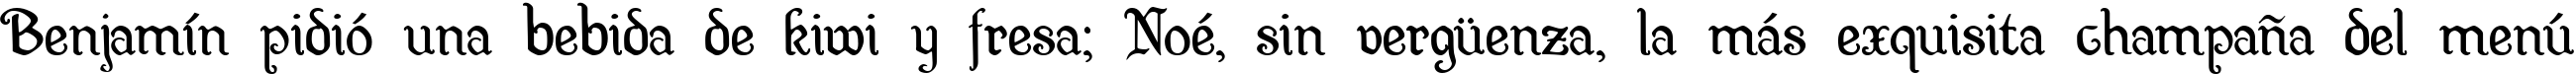 Пример написания шрифтом Wellsley текста на испанском